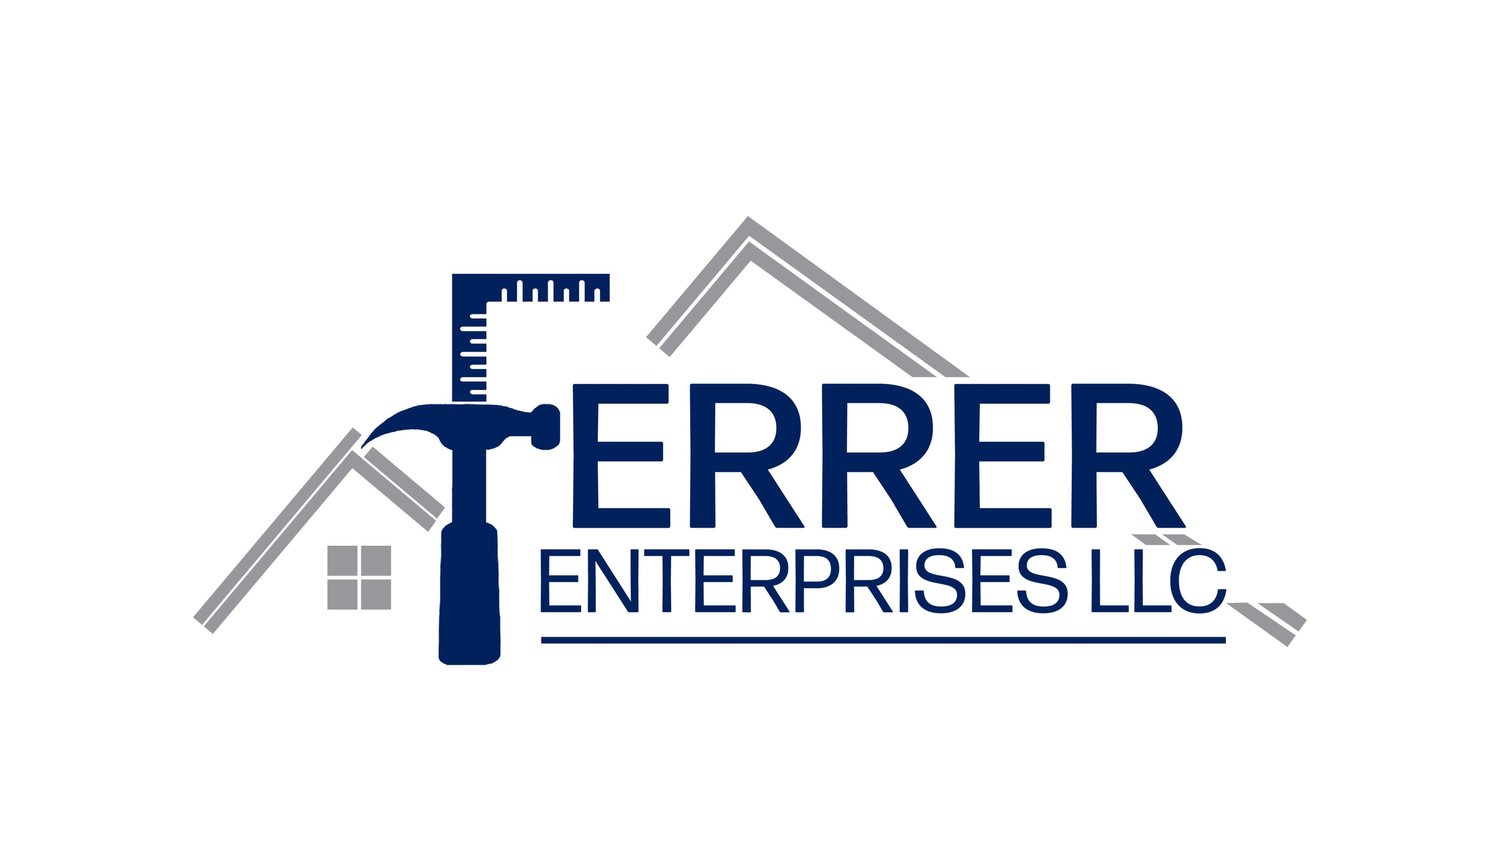 Ferrer Enterprises LLC